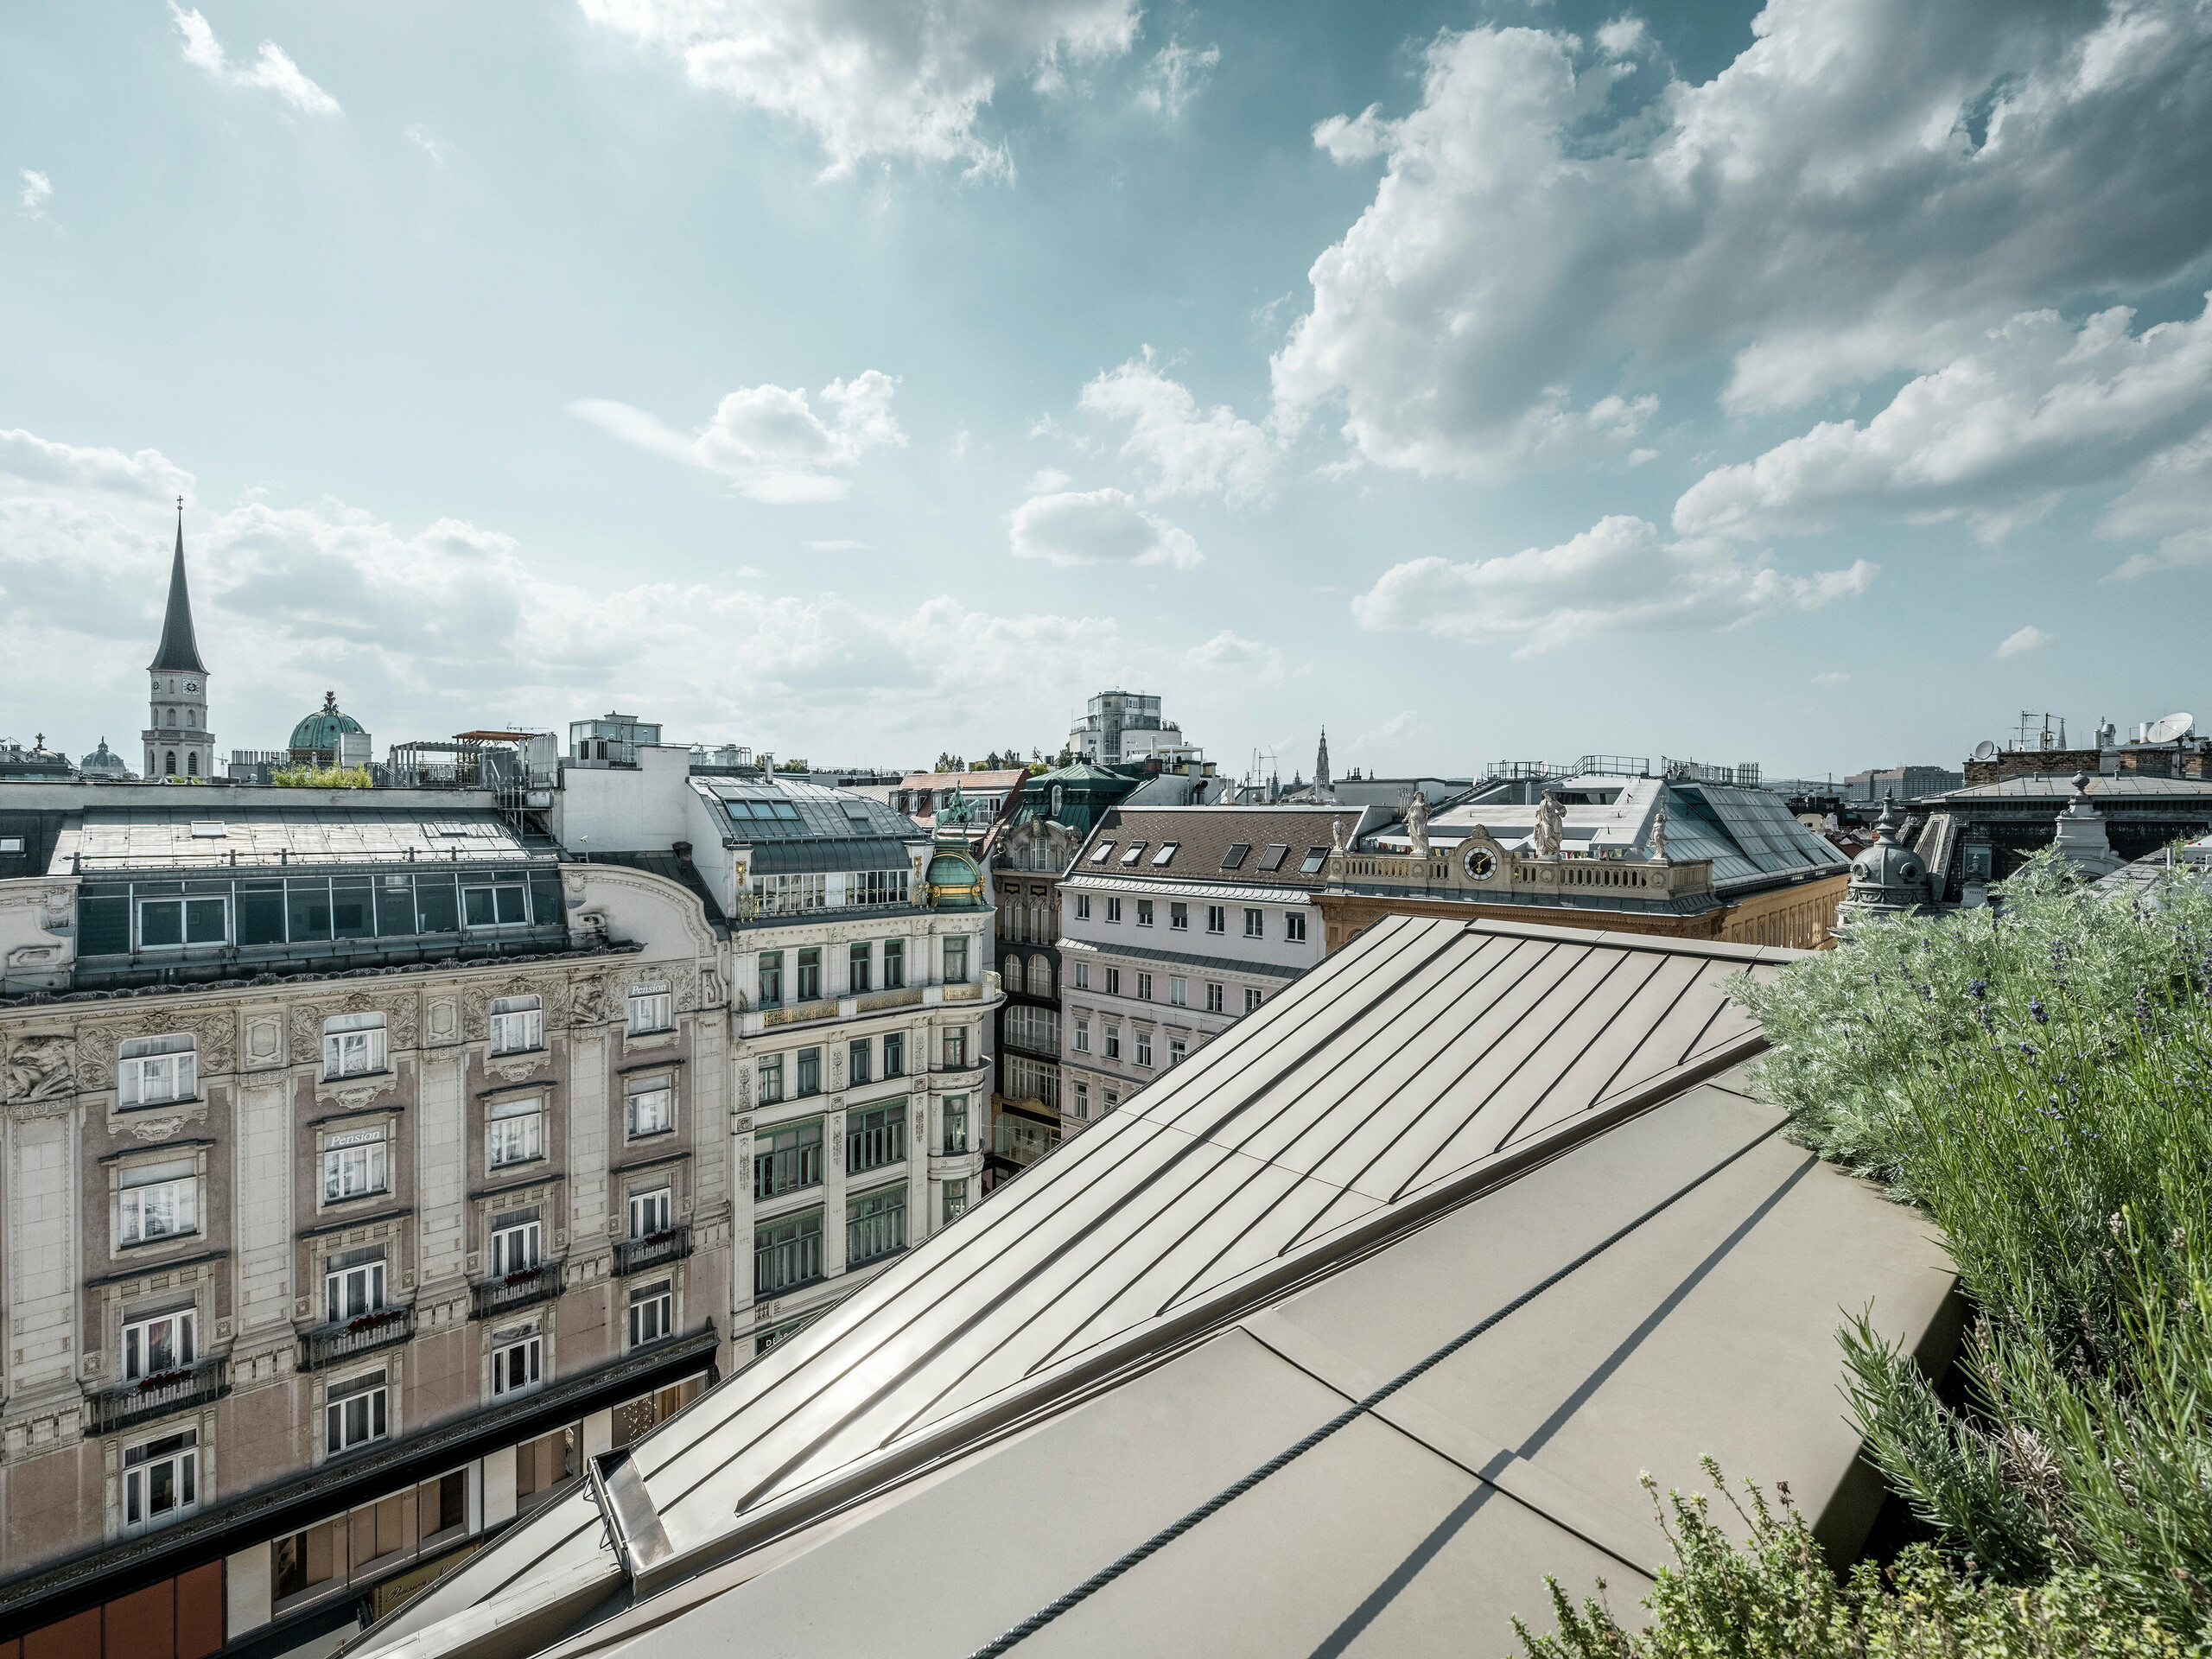 Vue large sur les toits de Vienne, avec à gauche les bandes Prefalz à l’élégante couleur bronze de l’hôtel Rosewood Vienna.